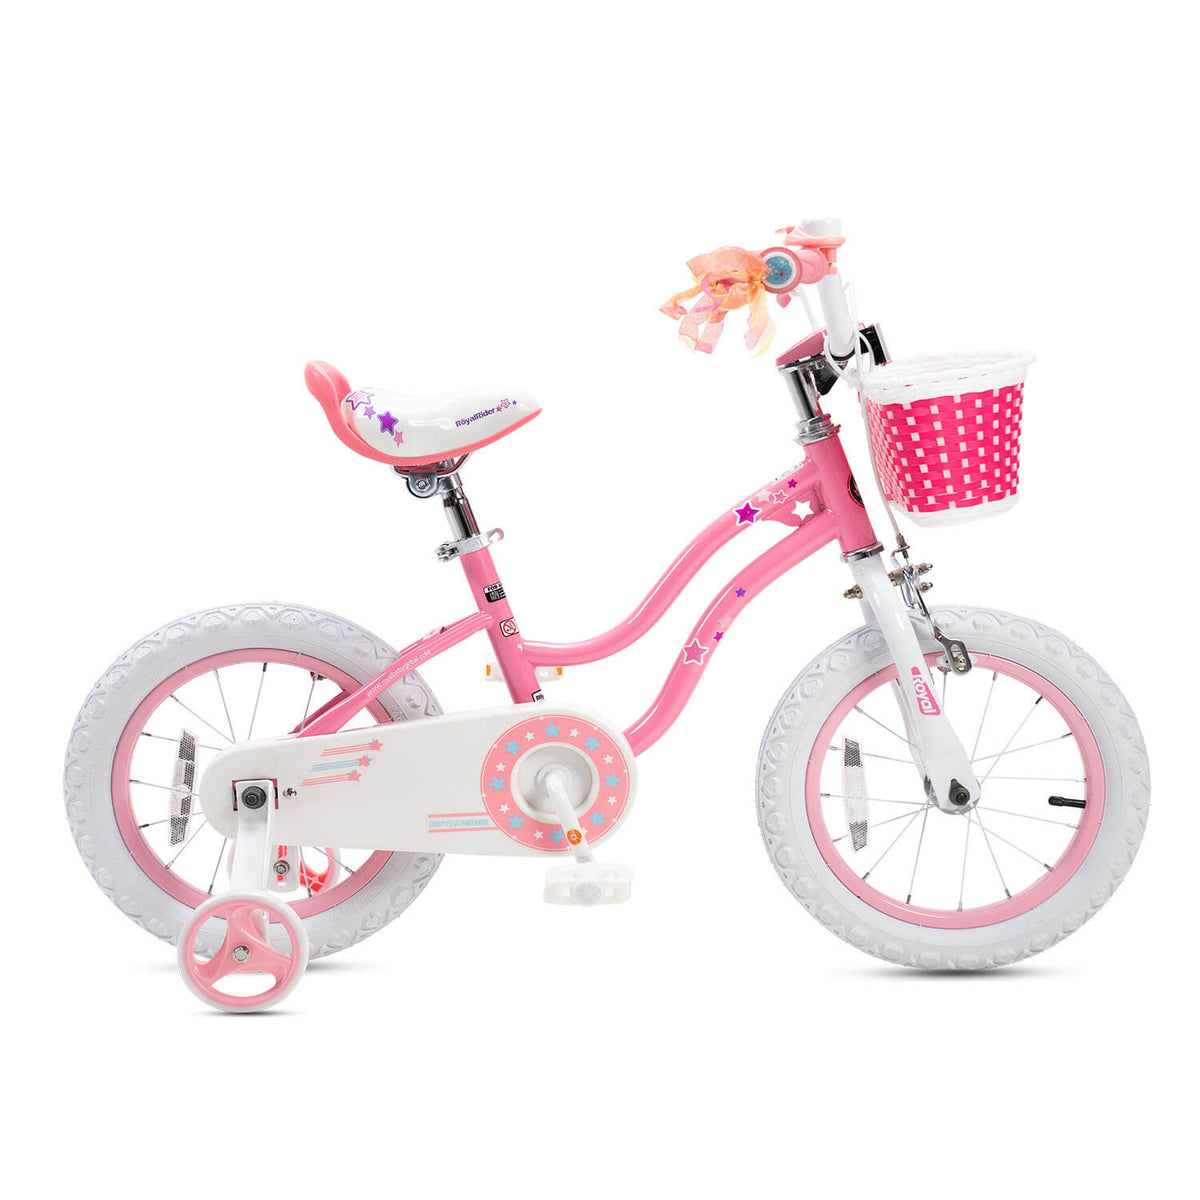 RoyalBaby Stargirl Kids Bike